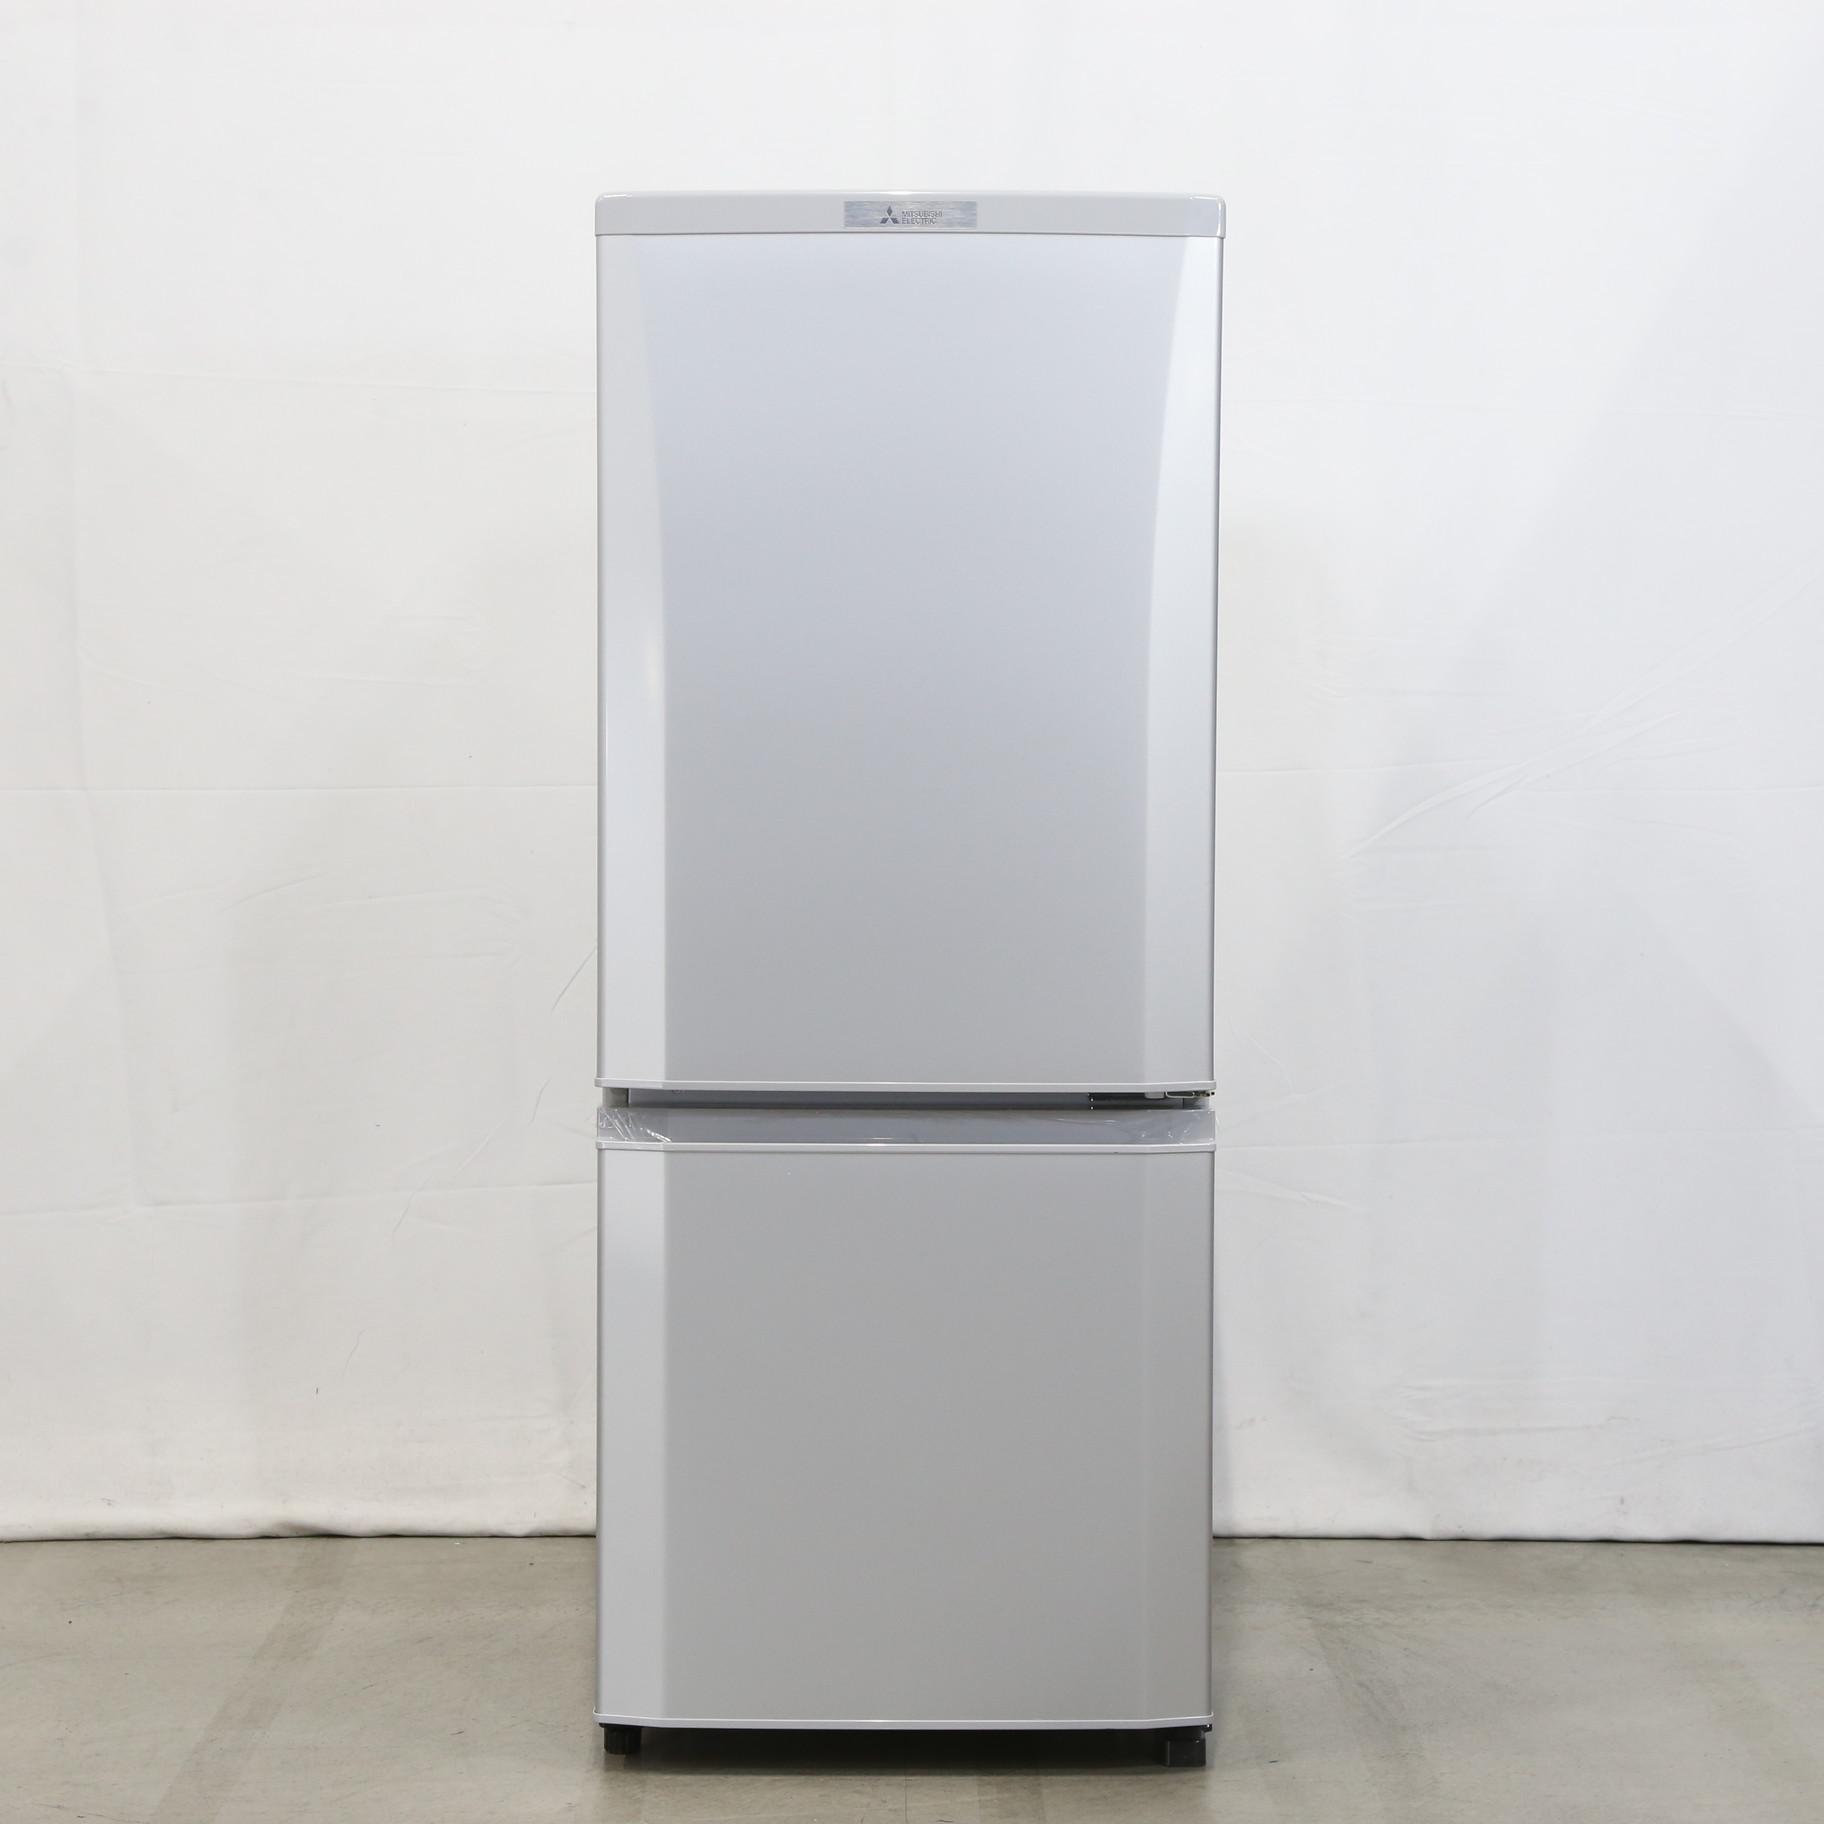 【売り廉価】三菱電機 MR-P15E-S 冷蔵庫 146L シャイニーシルバー 冷蔵庫・冷凍庫